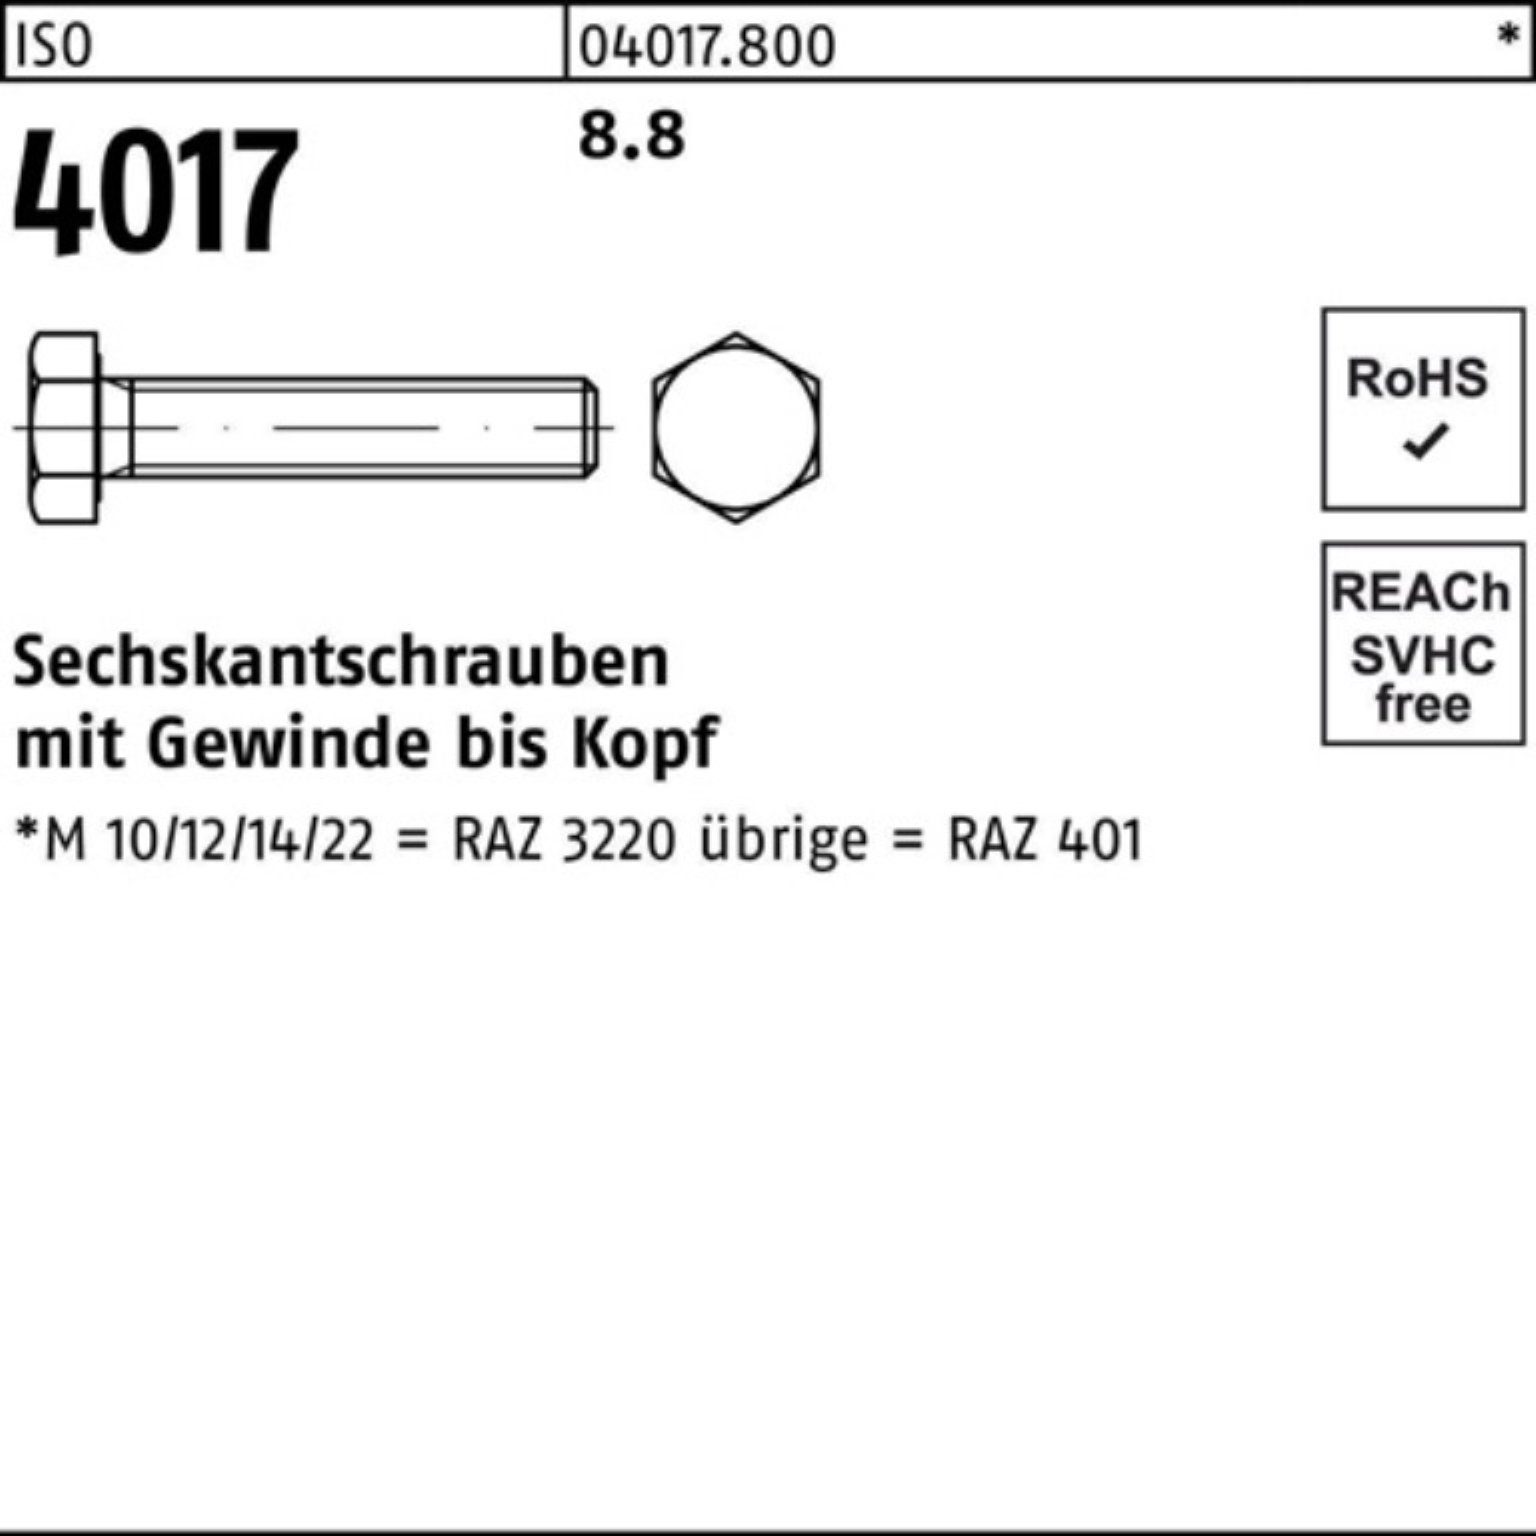 Sechskantschraube VG 401 ISO 50 ISO Pack 8.8 Stück Sechskantschraube 16 100er Bufab M16x 4017